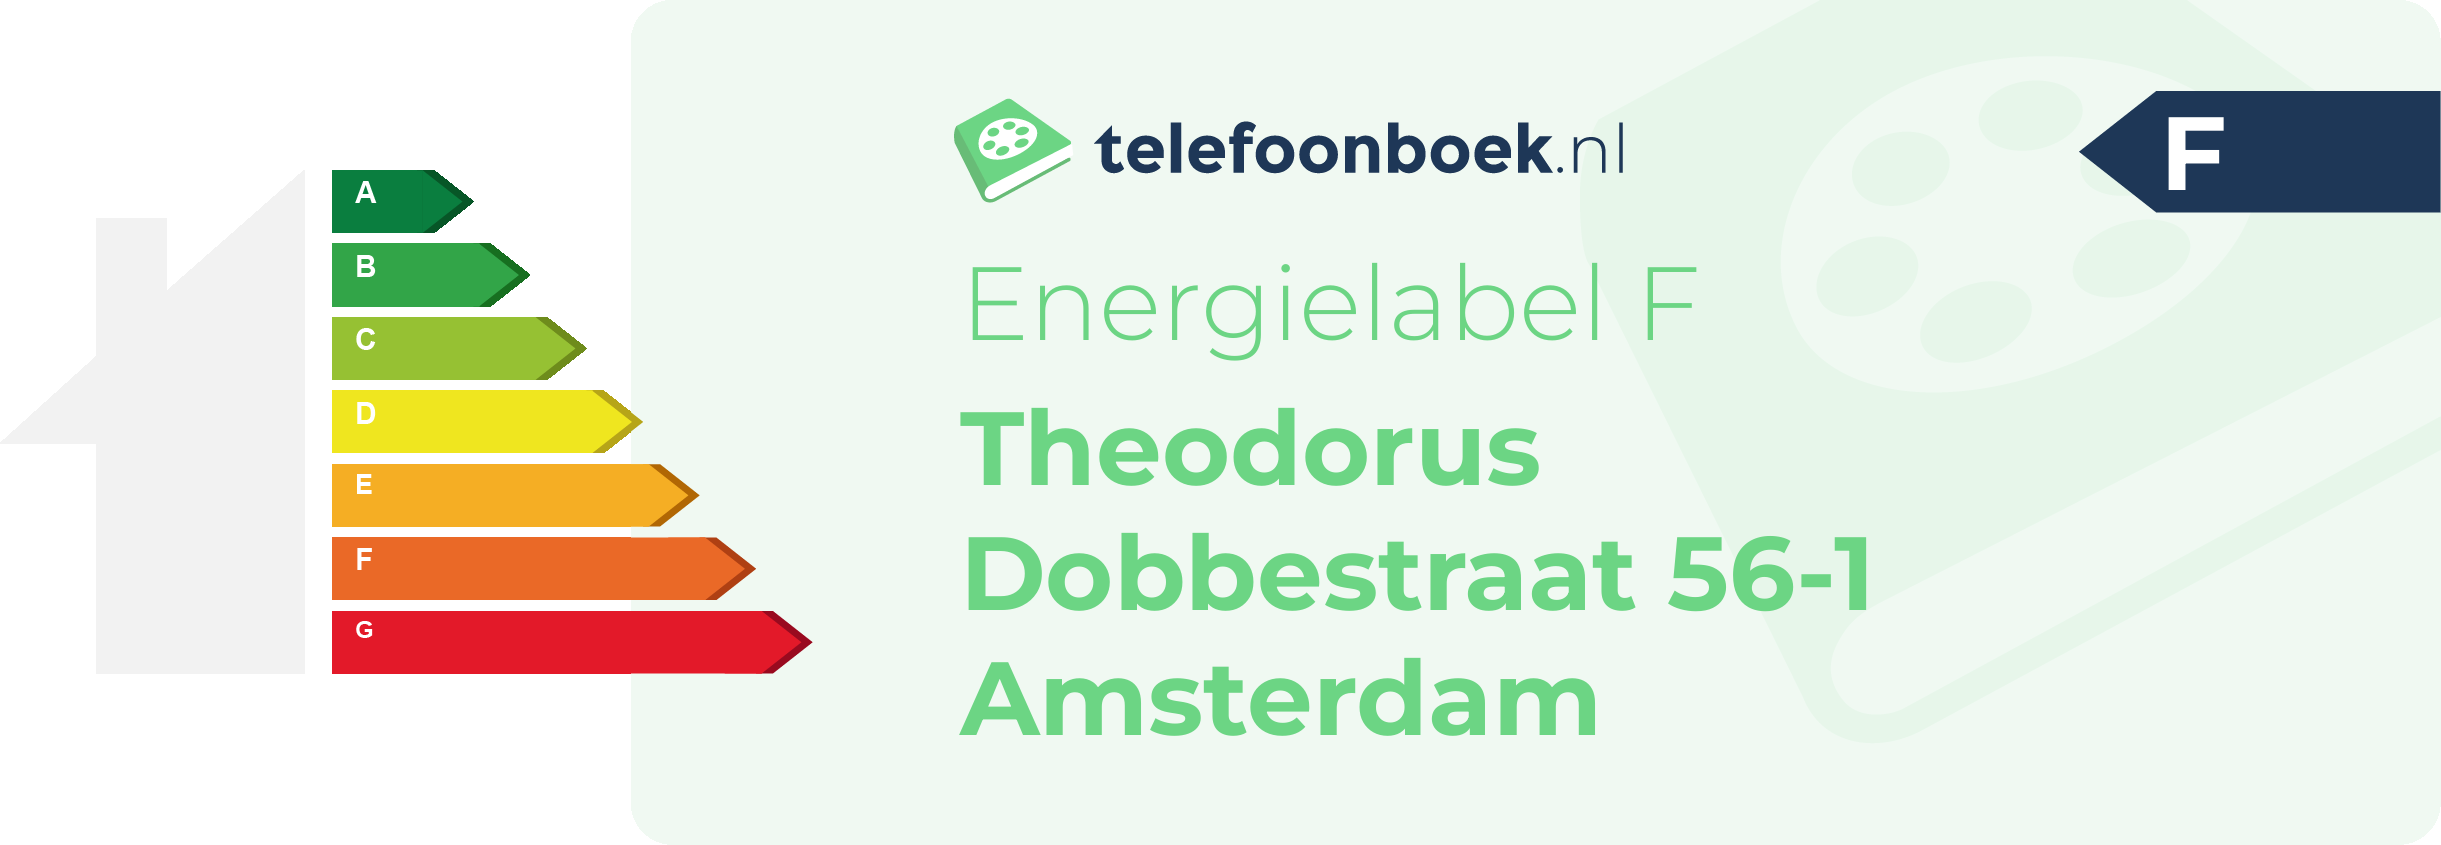 Energielabel Theodorus Dobbestraat 56-1 Amsterdam